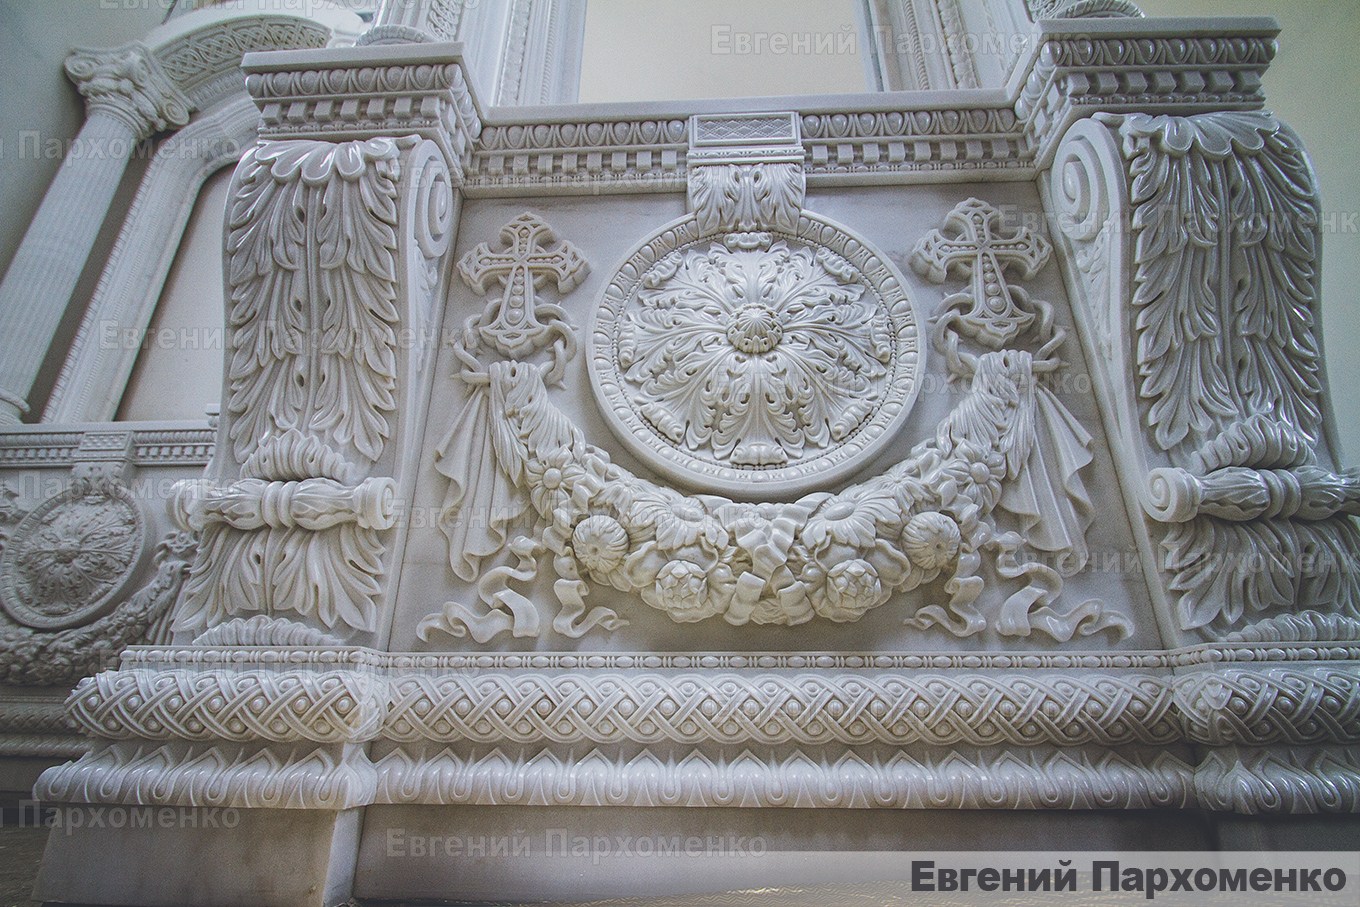 Тумбный ряд мраморного иконостаса храма Сергия Радонежского